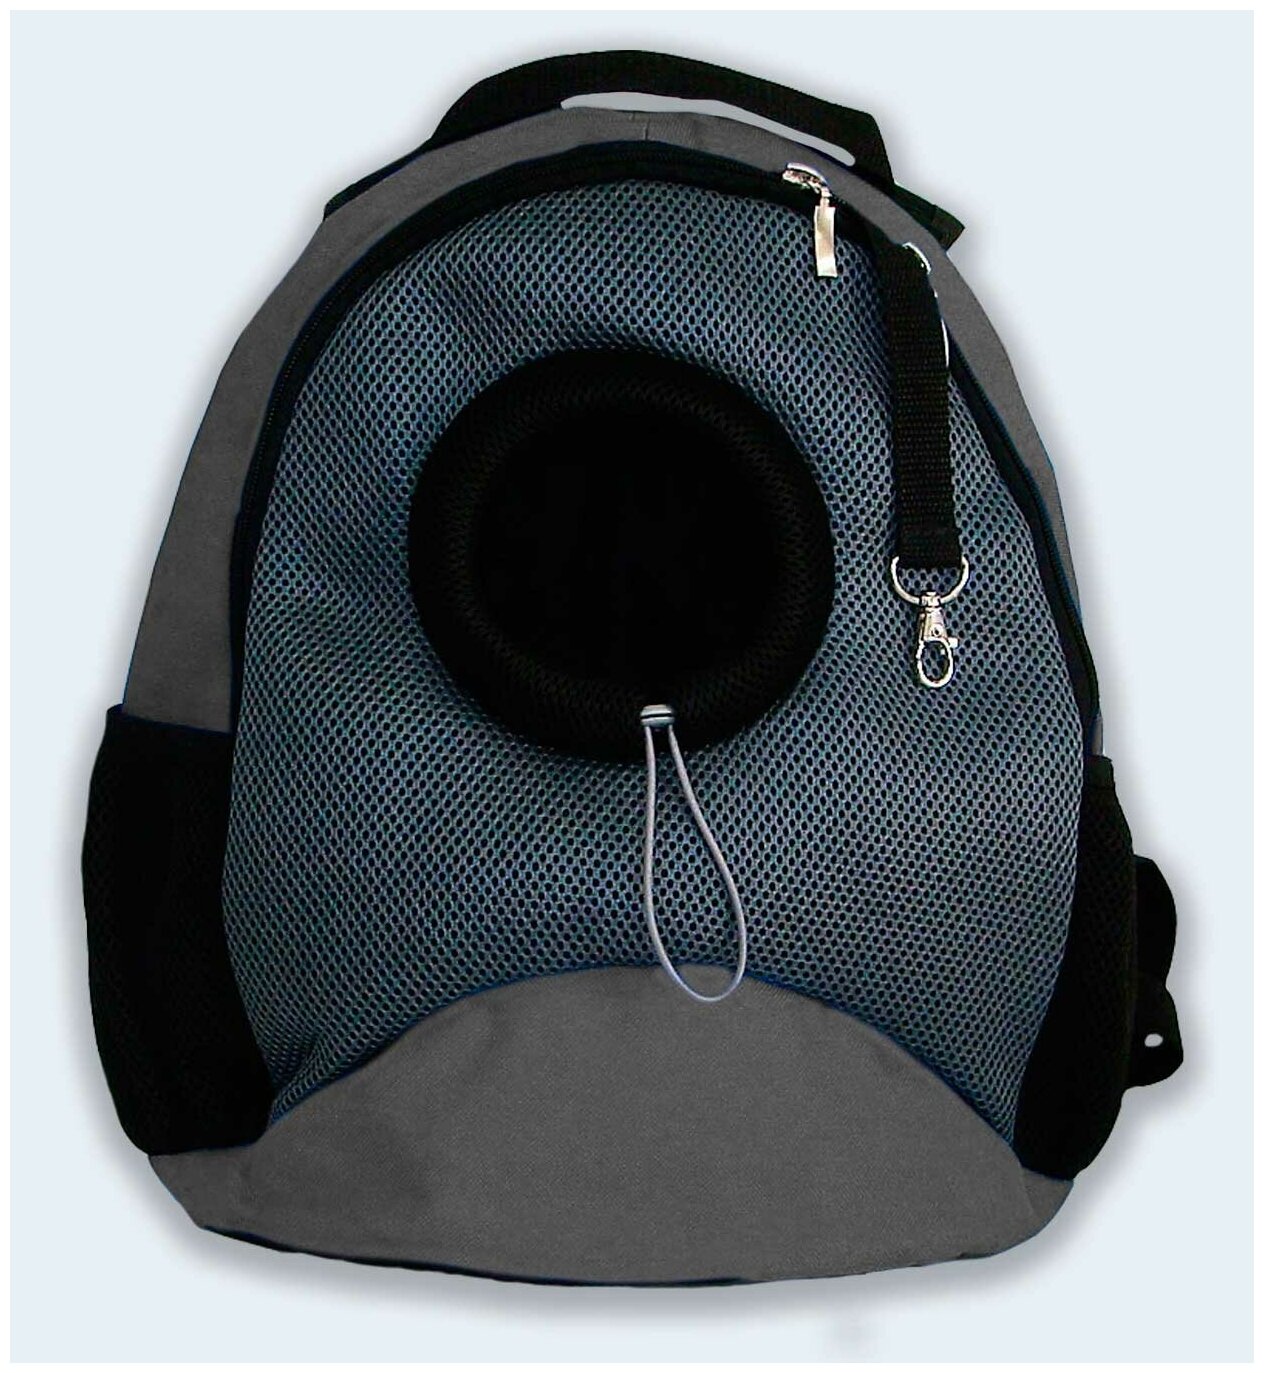 Рюкзак для собак и кошек Melenni Эконом M серый/серая сетка, 41x38x22, см; Вес: 600 гр.